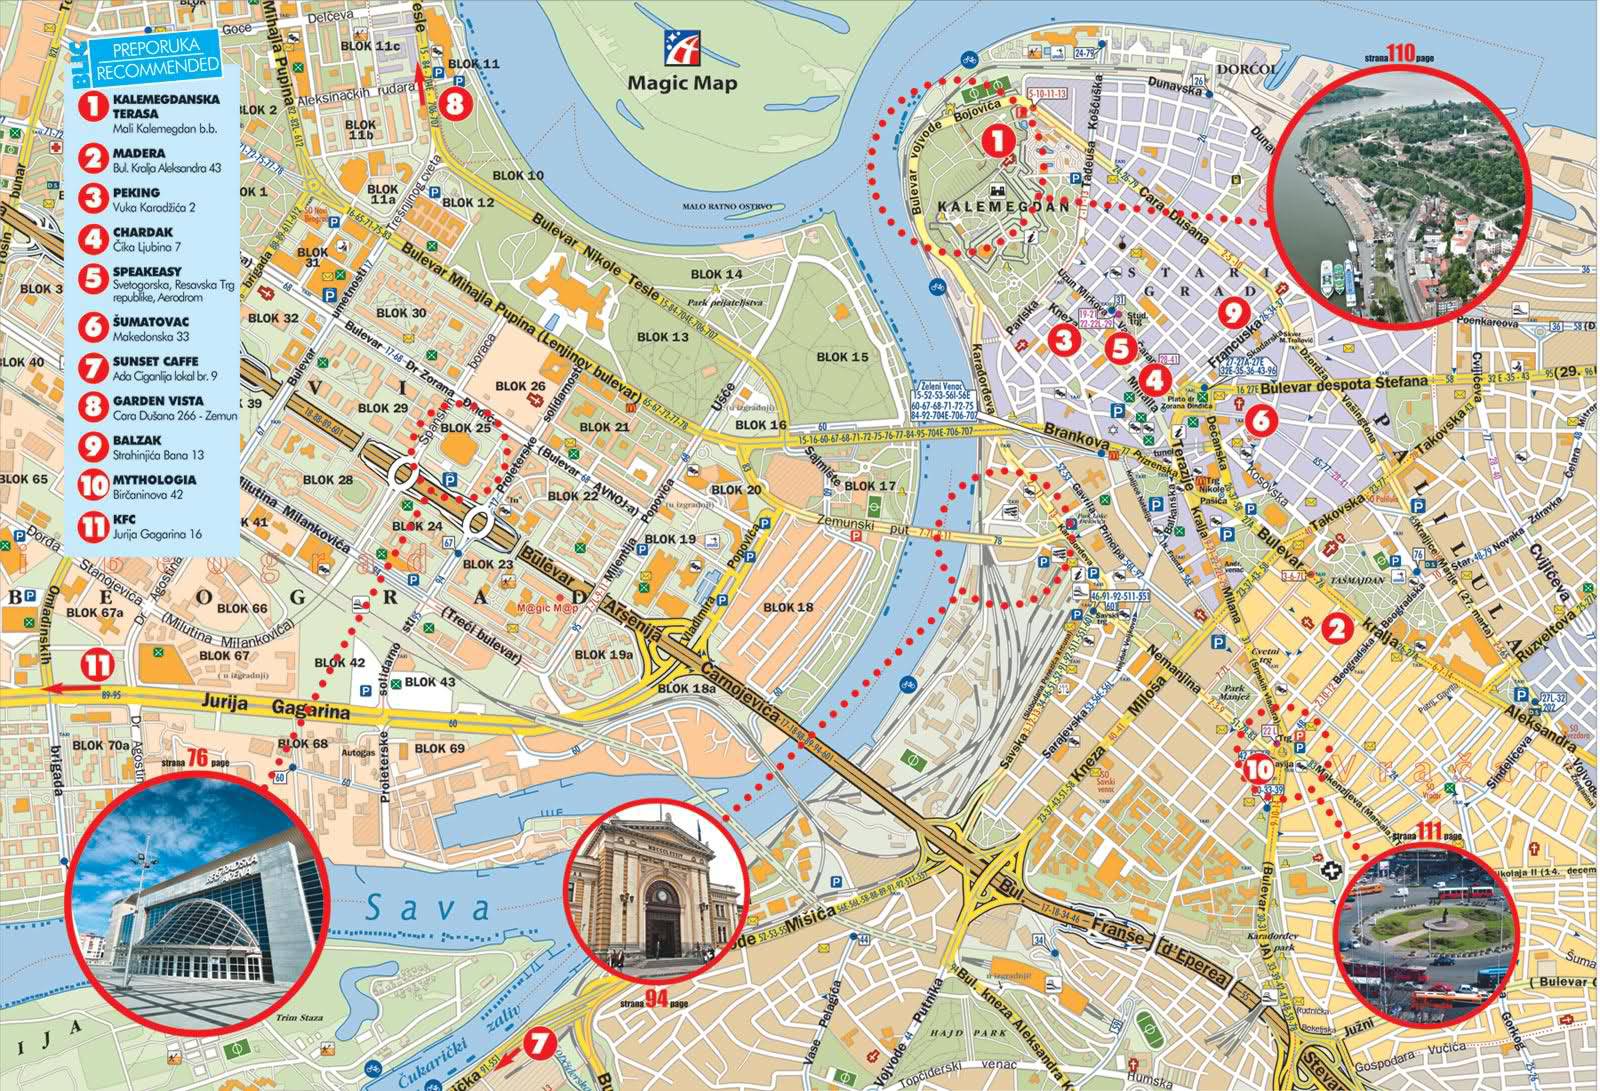 Белград на карте мира Подробные карты Белграда Карта отелей